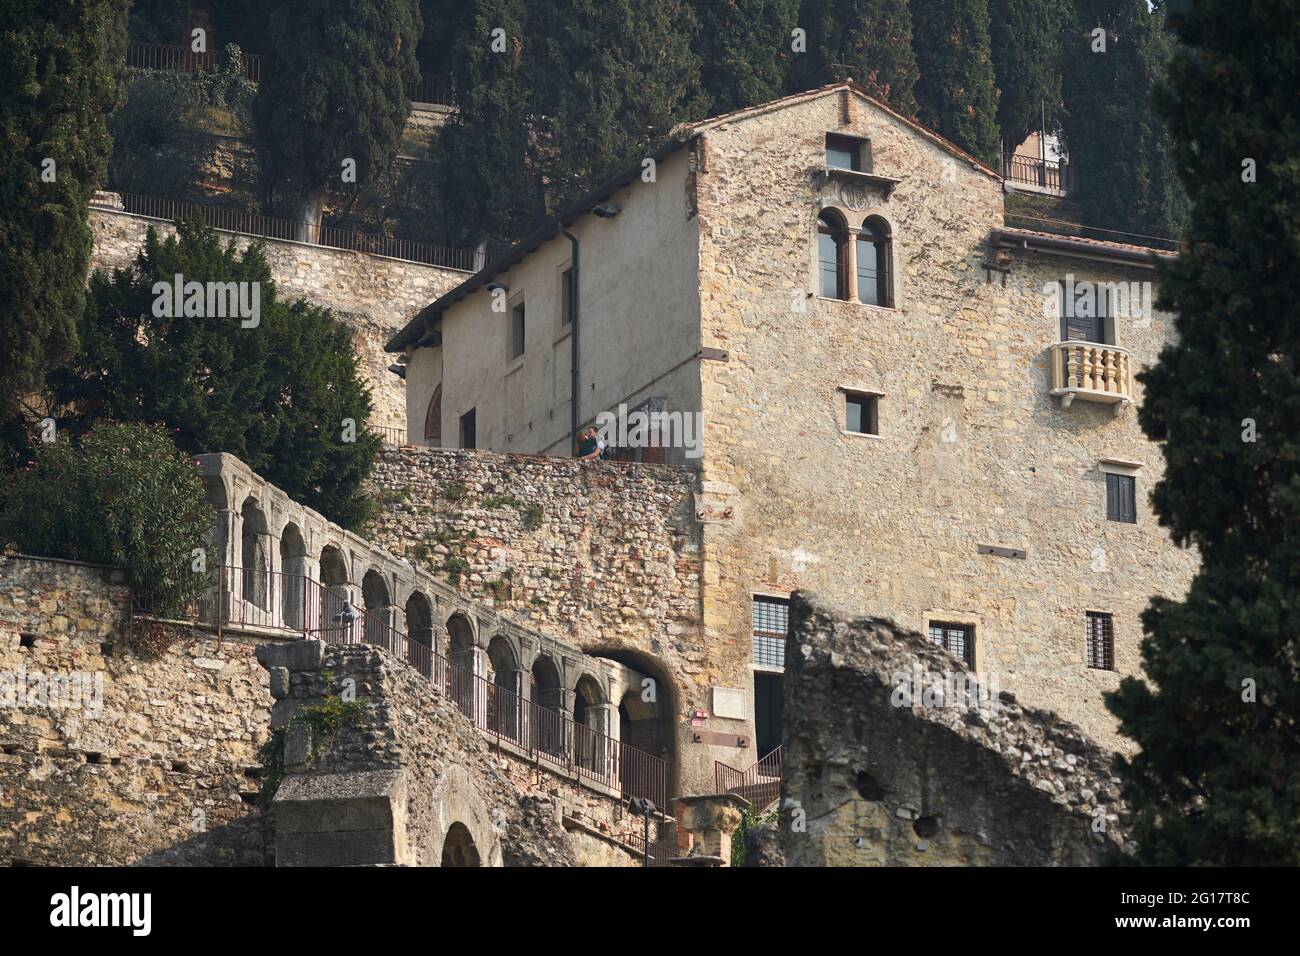 Edificio di antica architettura romana, Verona, Italia, 2017 Foto Stock